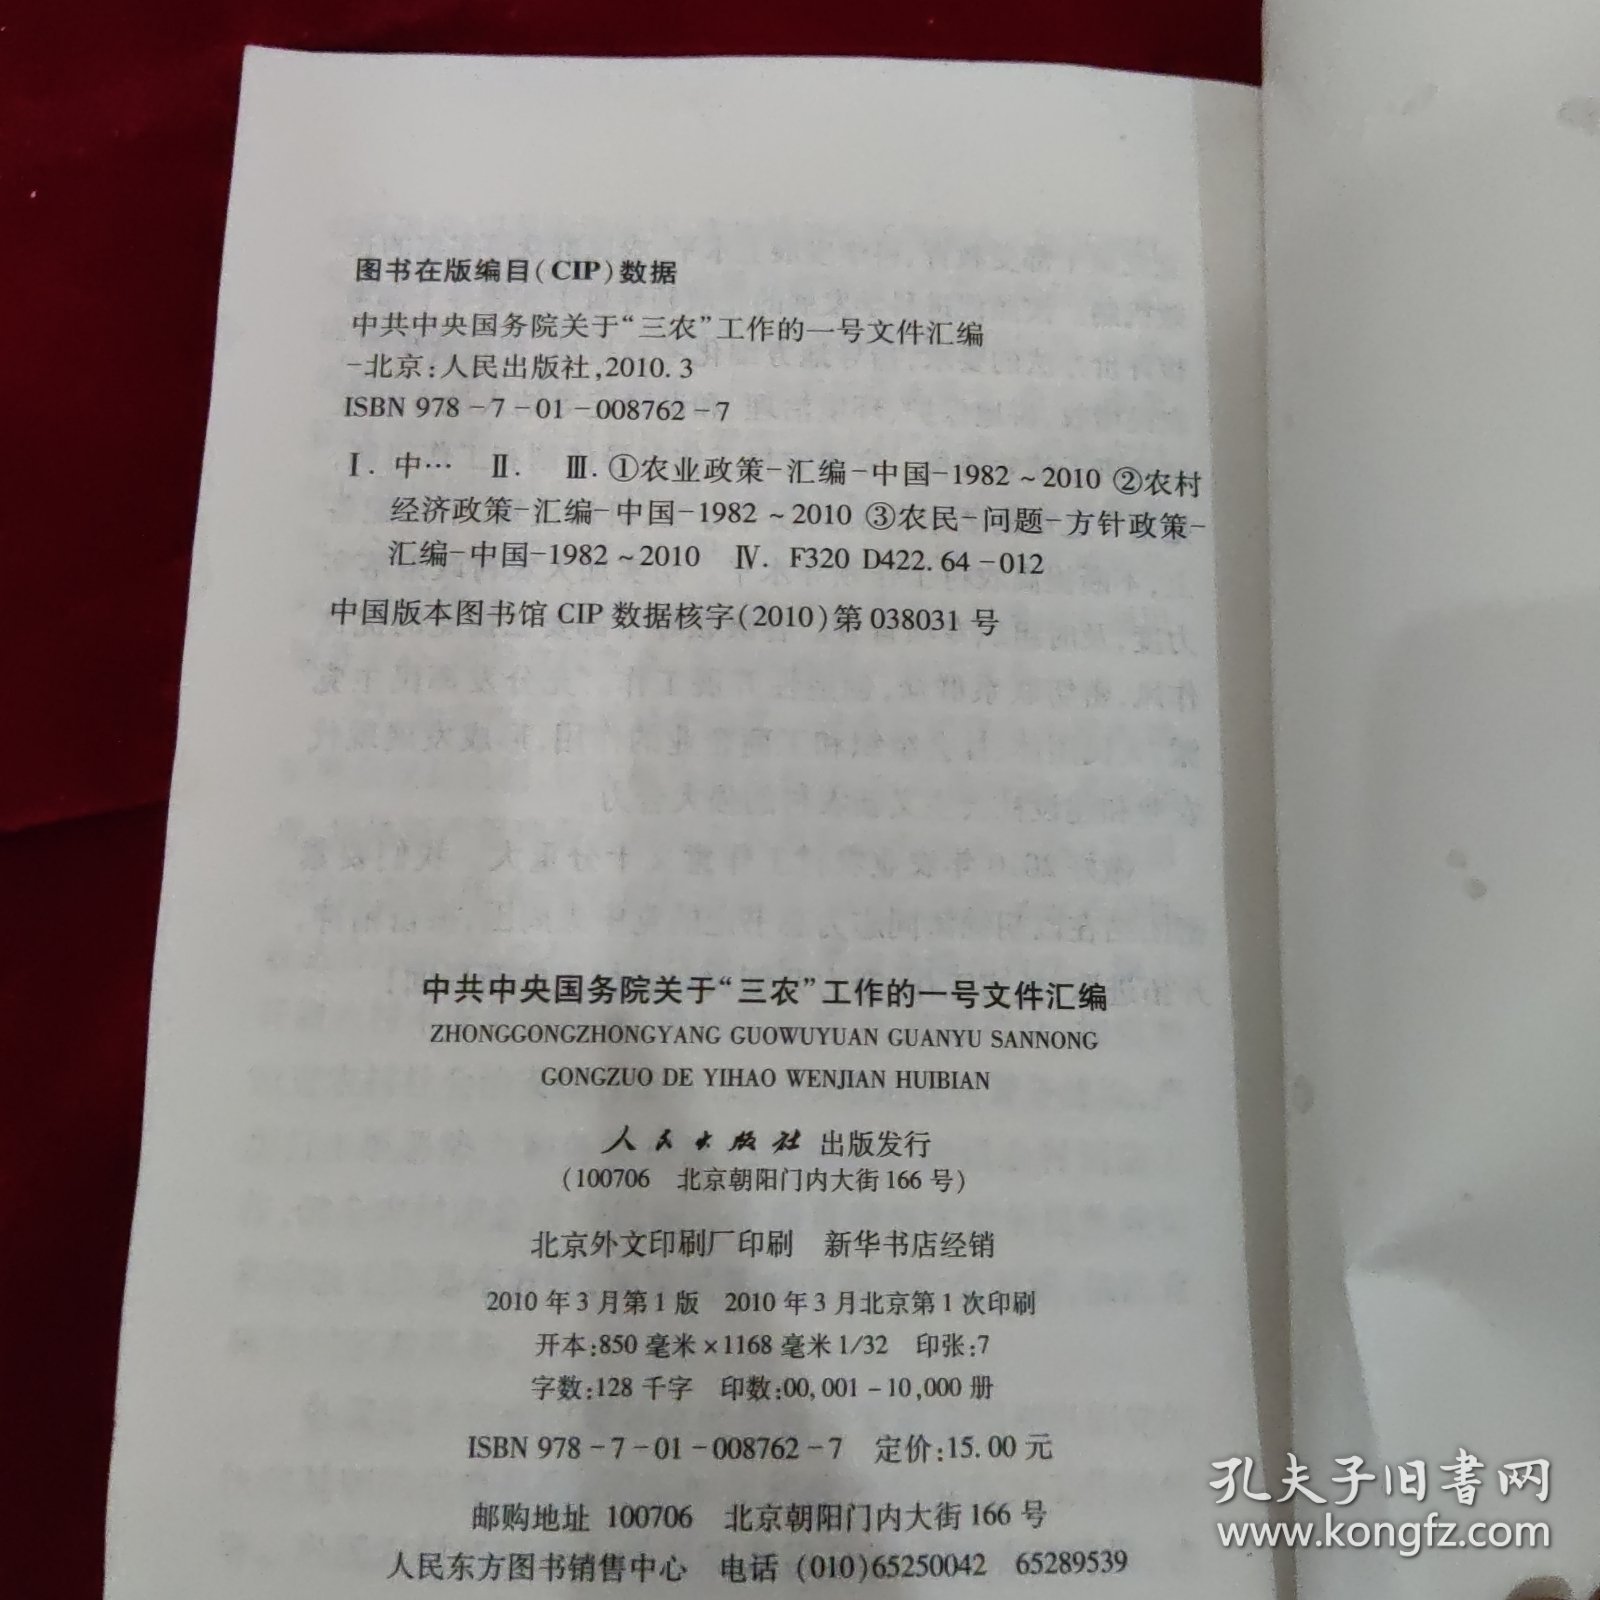 中共中央国务院关于“三农”工作的一号文件汇编